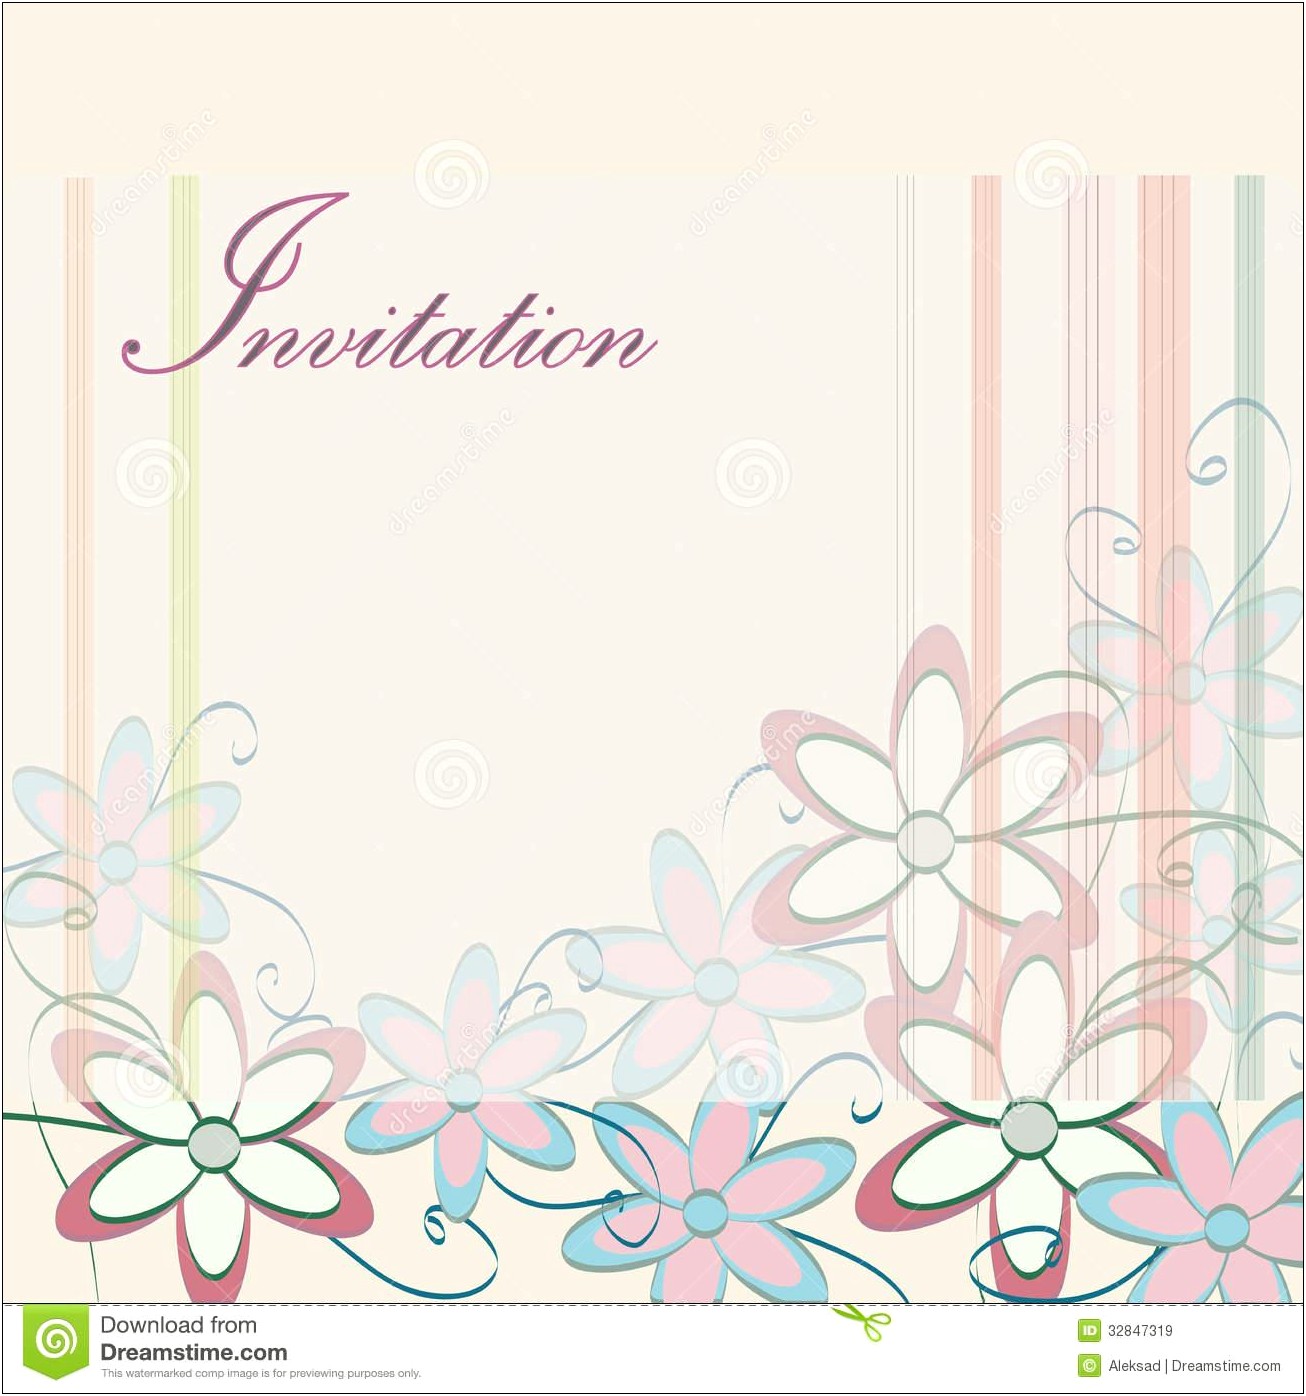 Create Pakistani Wedding Invitation Card Online Free